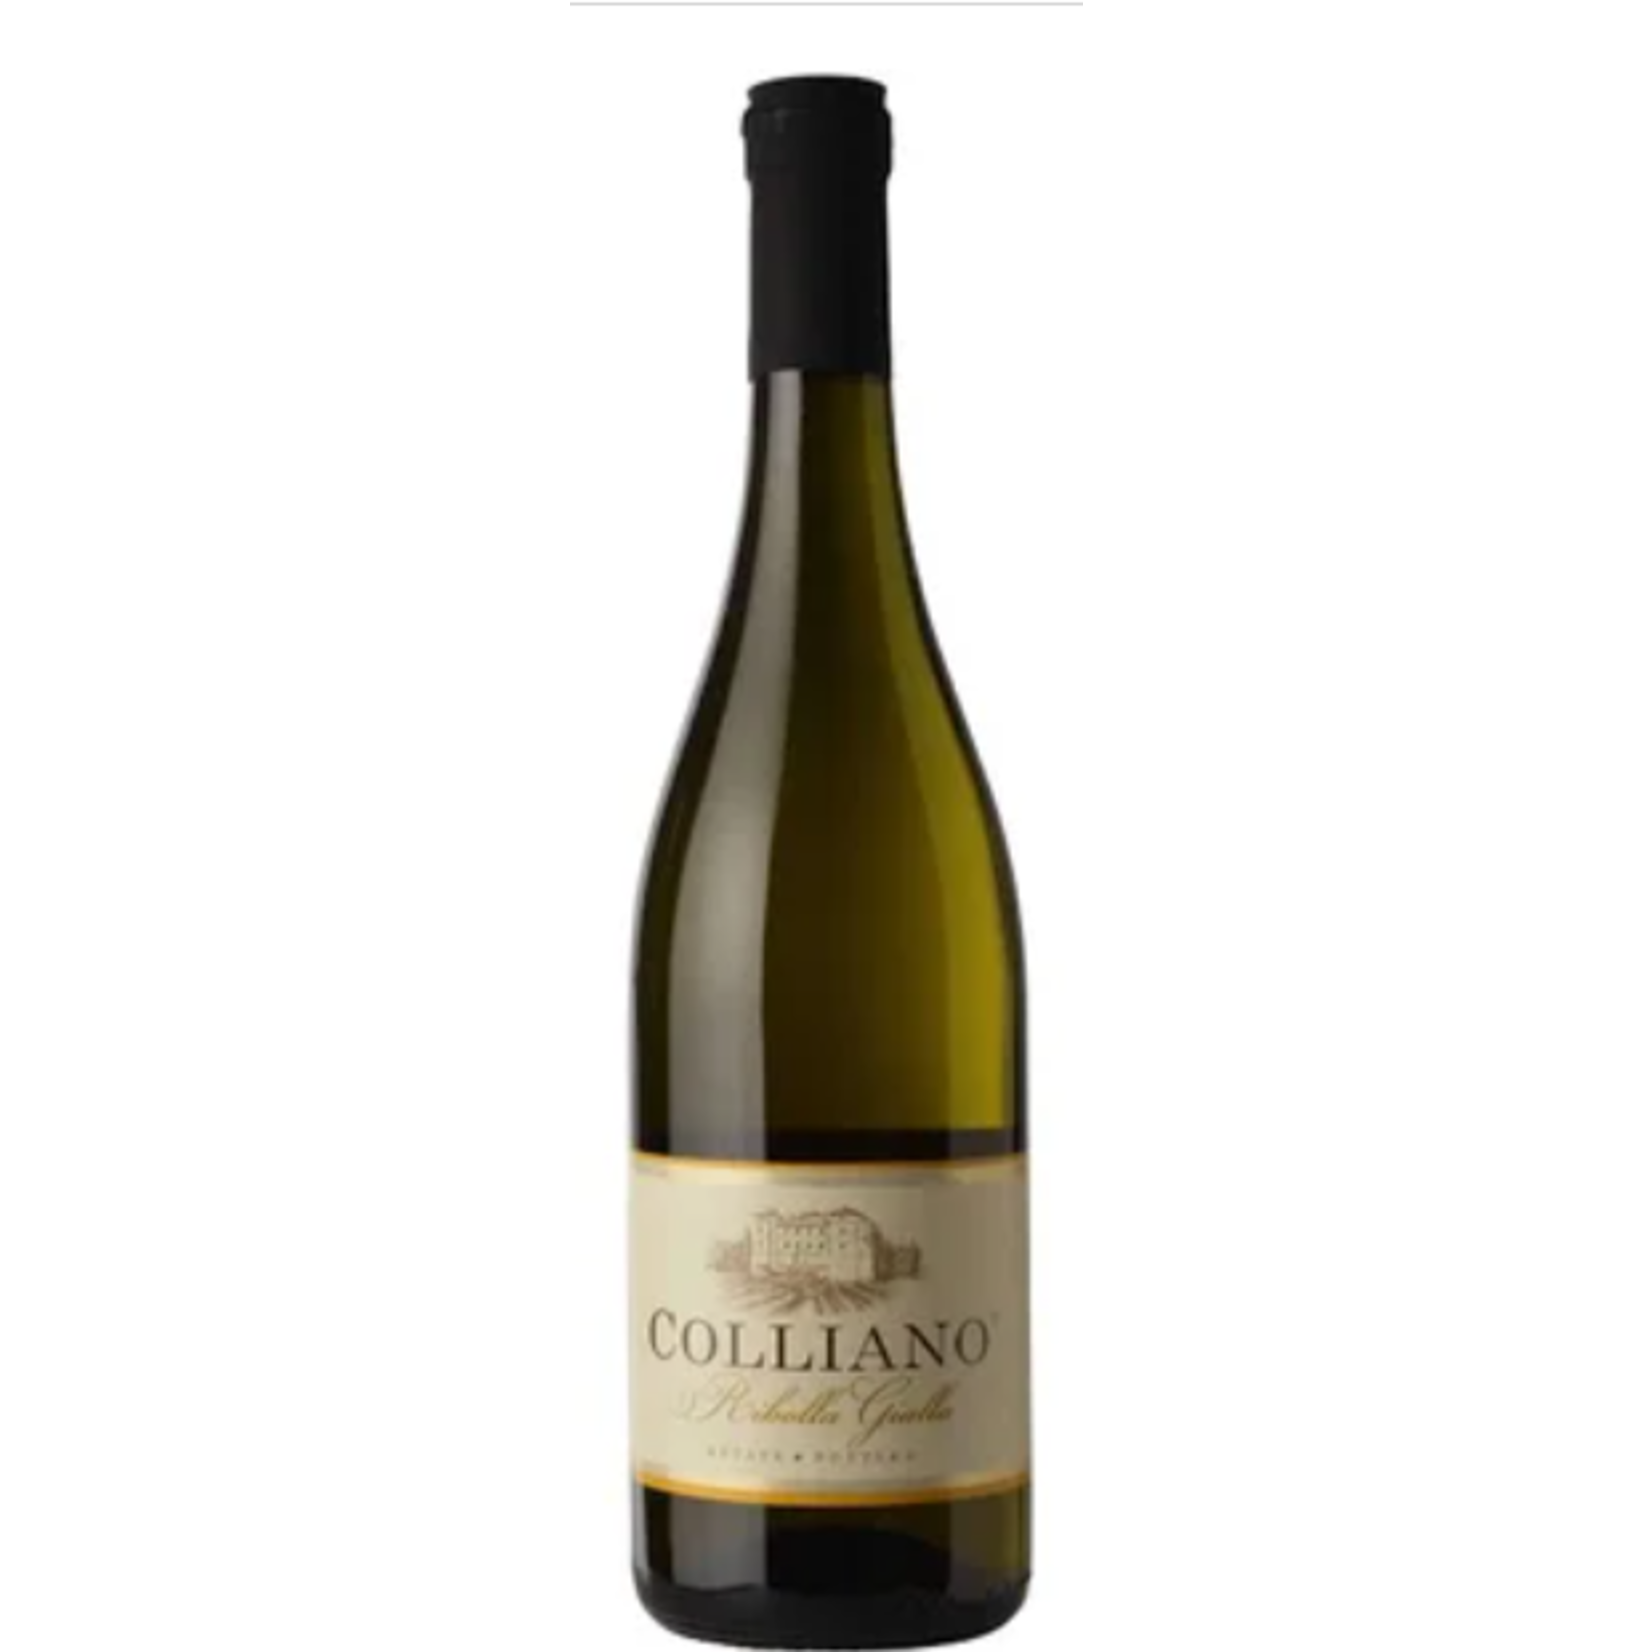 Colliano Colliano Estate Bottles 2019 Ribolla Gialla,  Slovenia